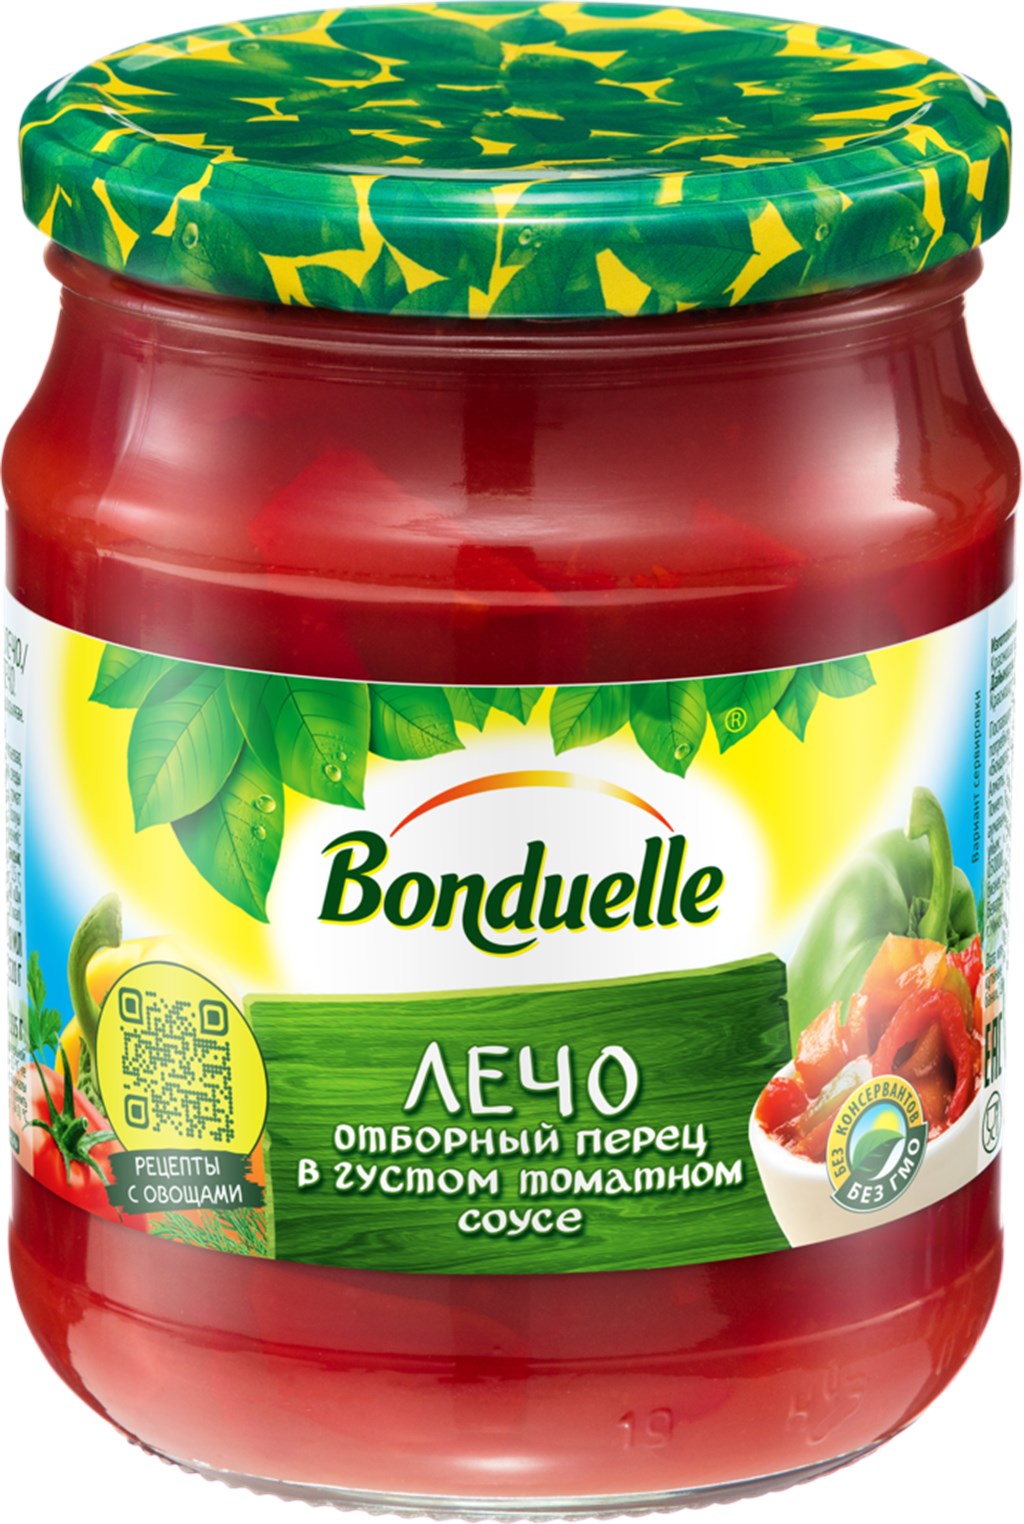 фото Лечо bonduelle отборный перец в густом томатном соусе 520 г